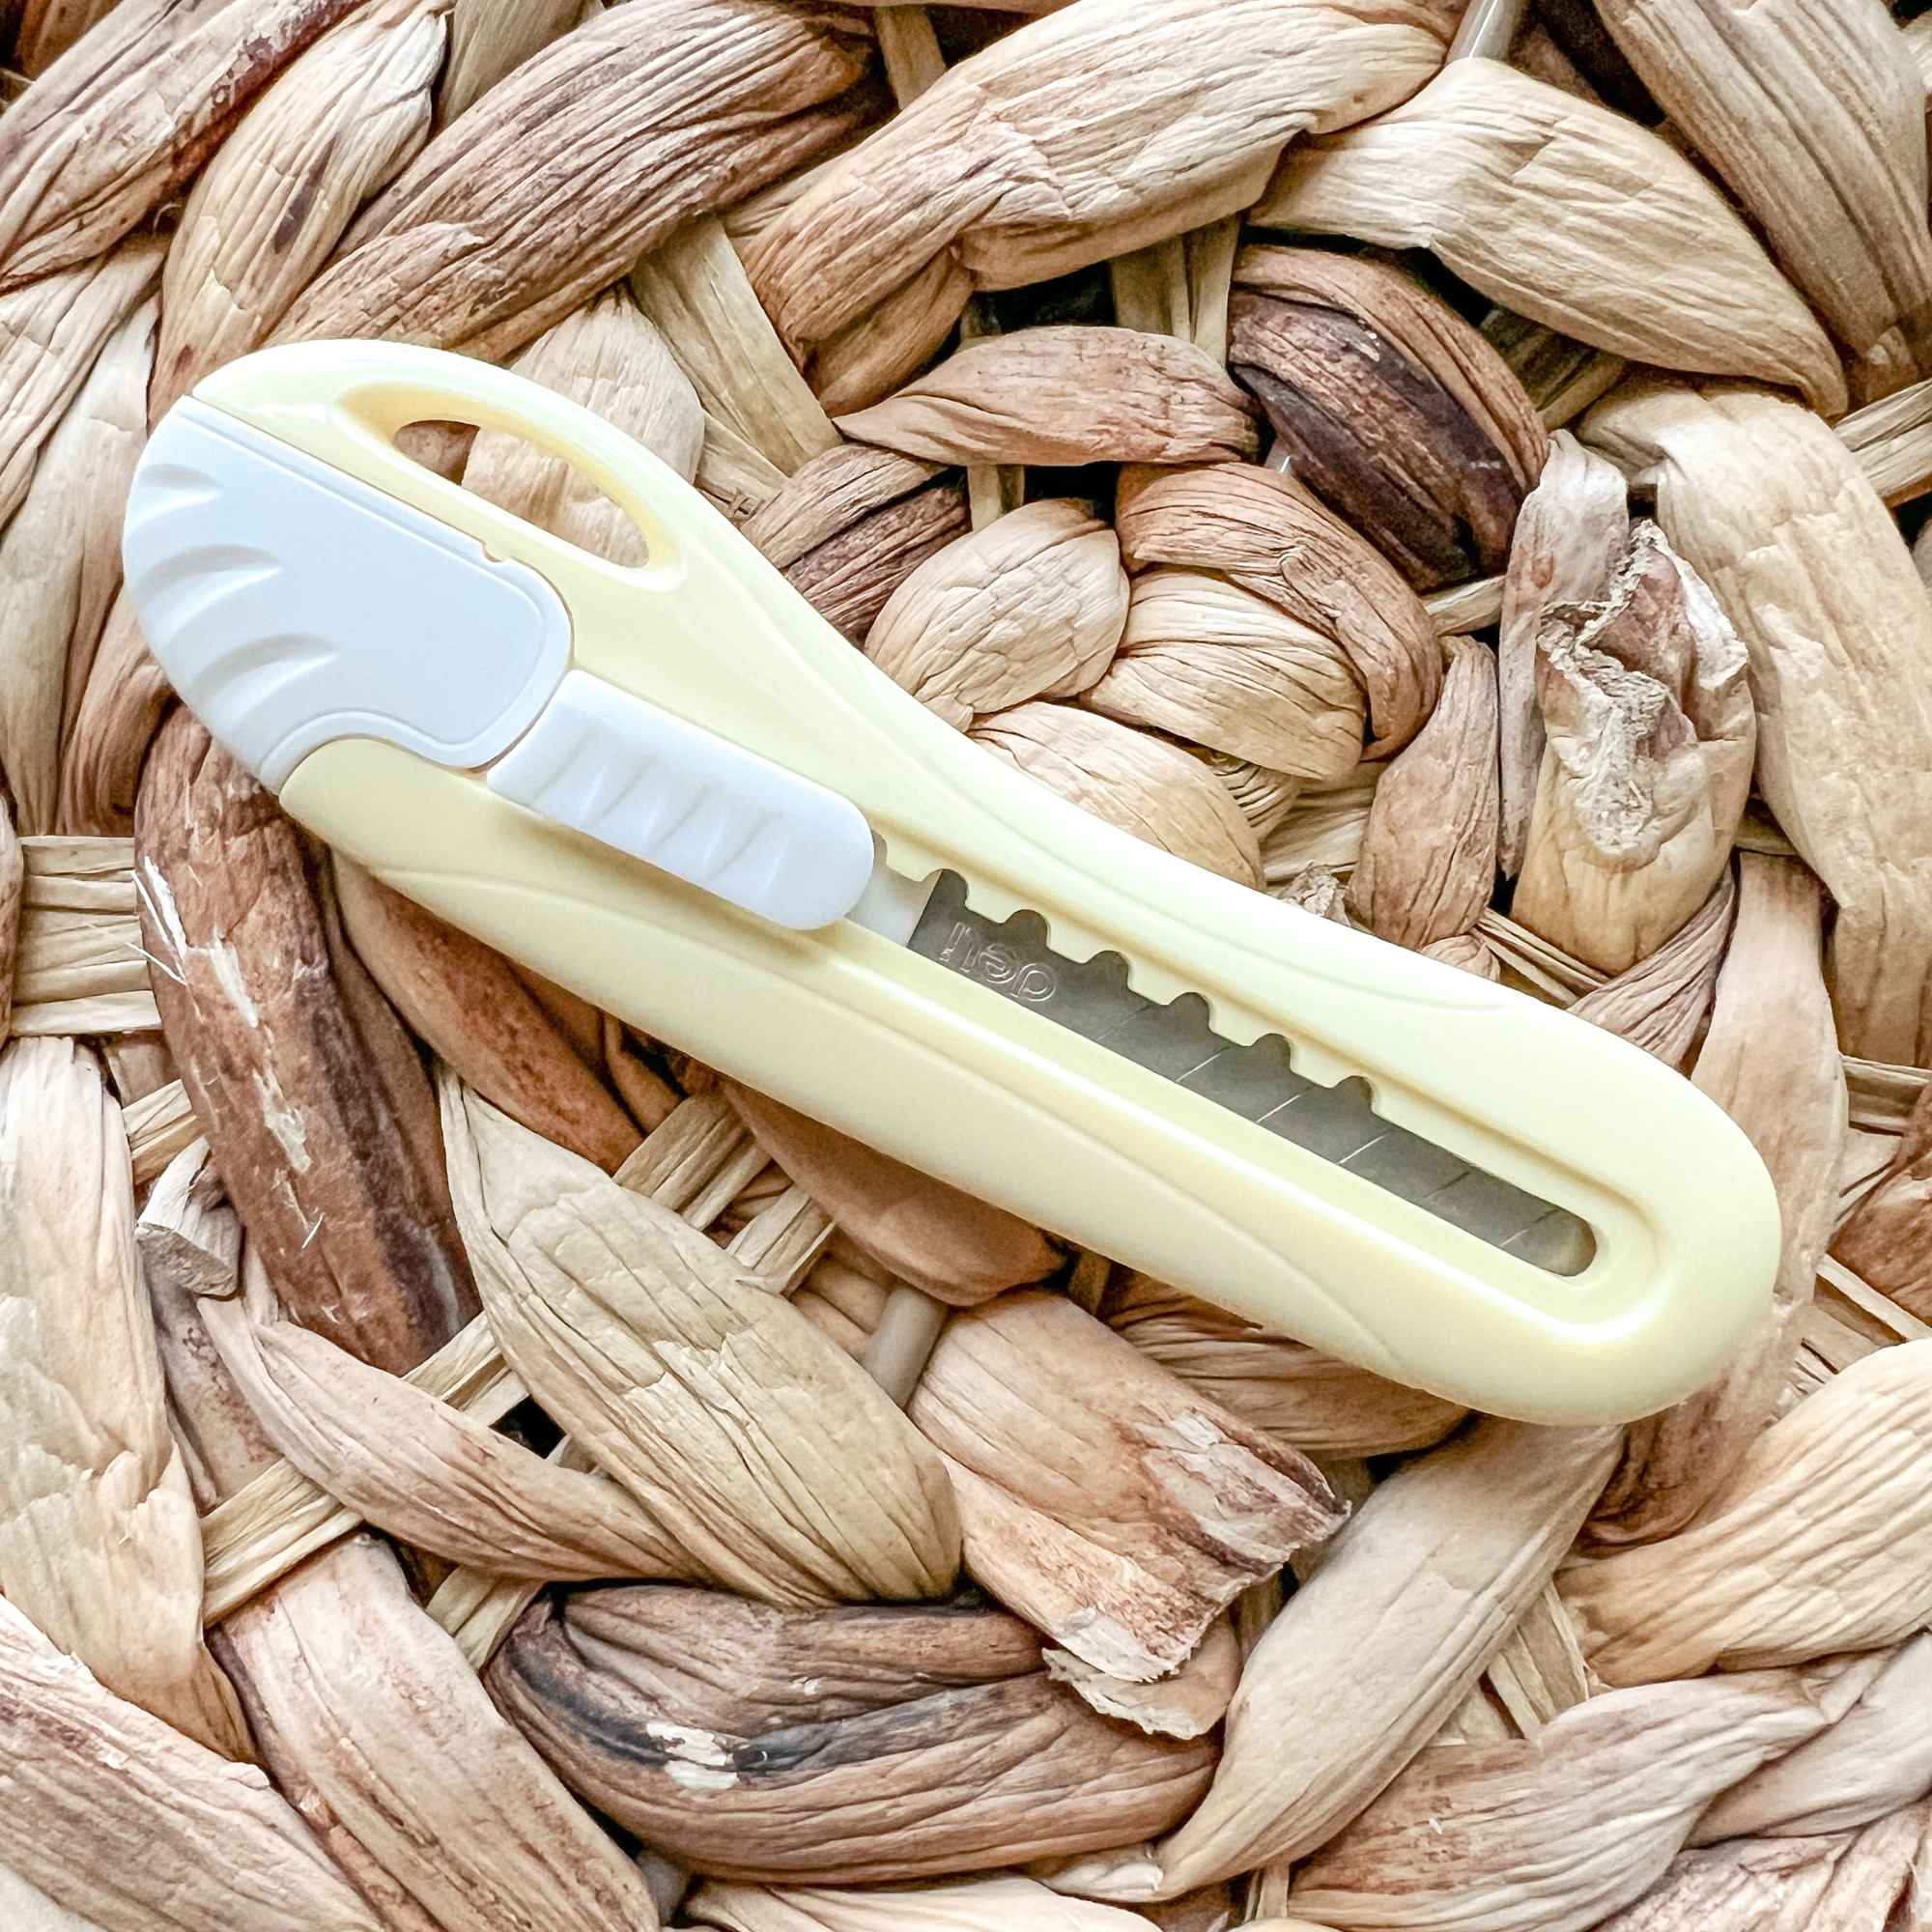 Sale! Multi-Purpose Mini Box Cutter Utility Knife – Graceful Mailers